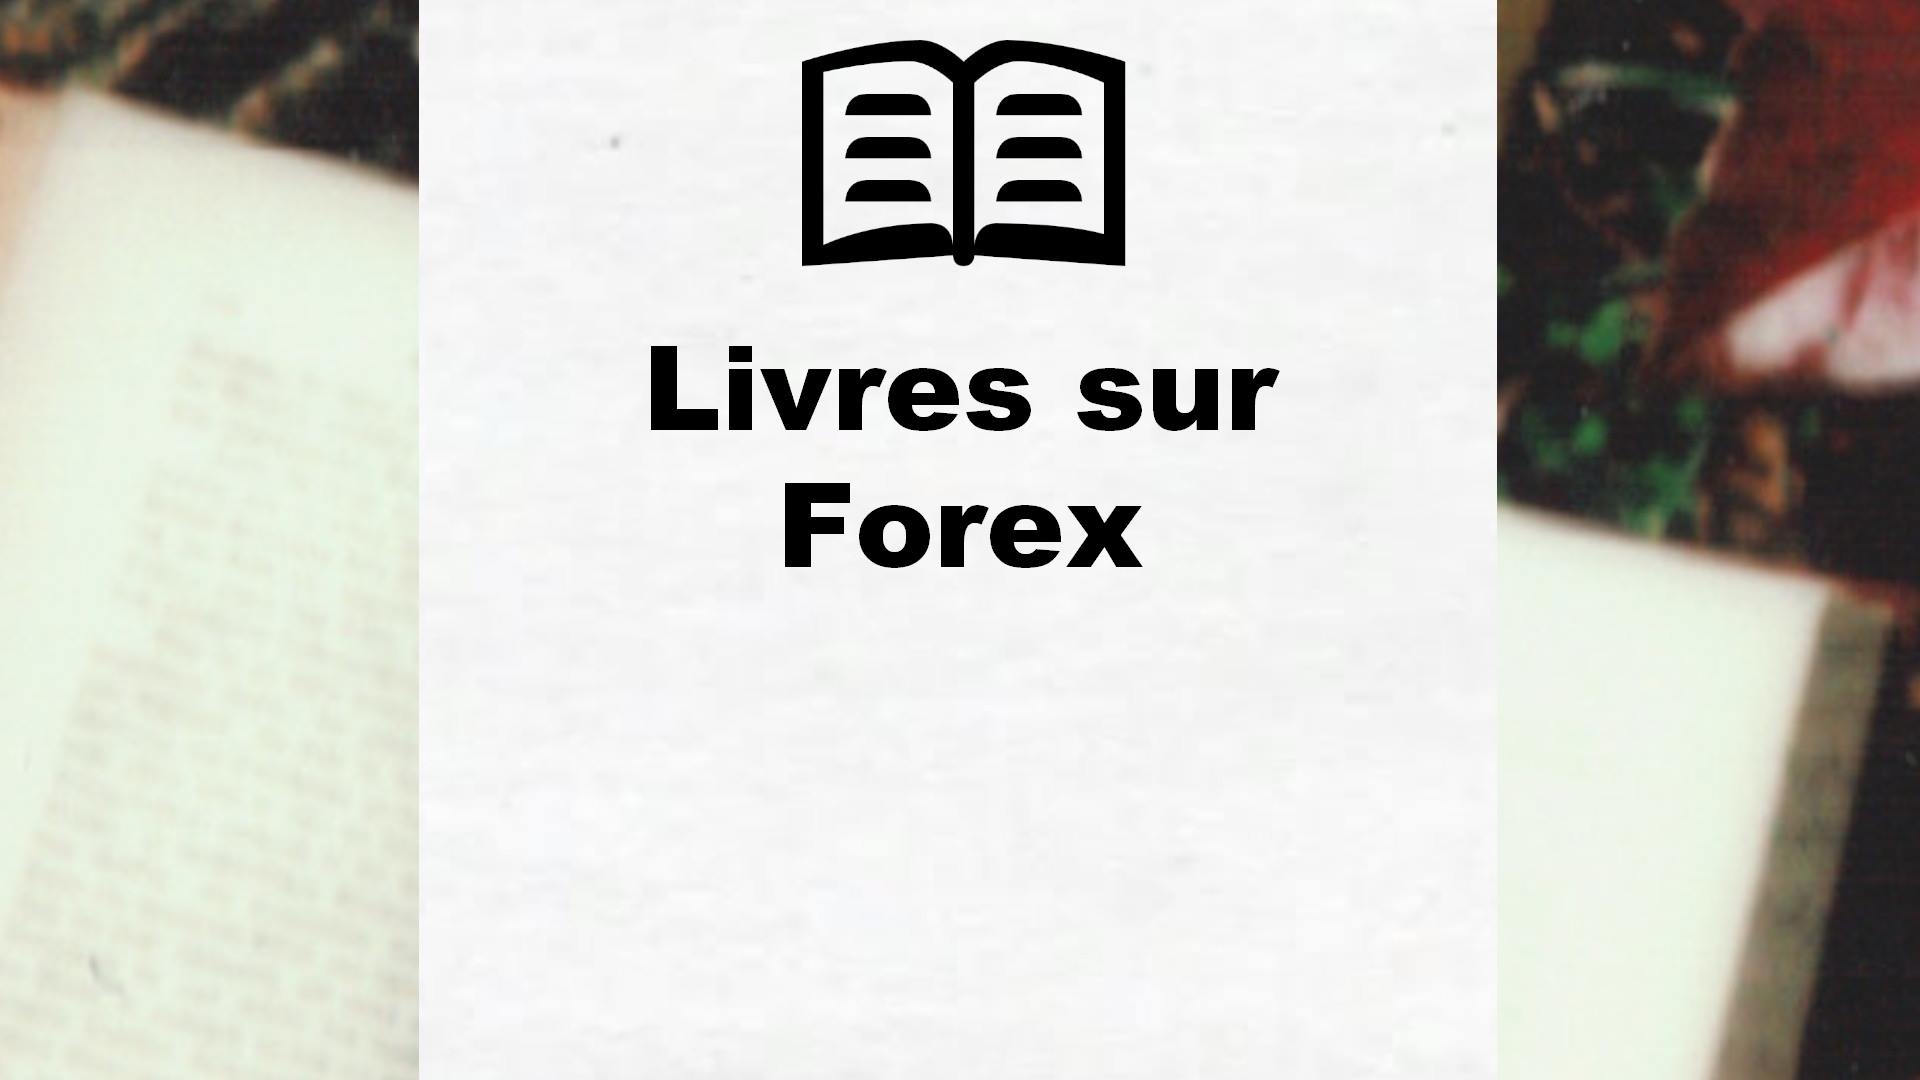 Livres sur Forex